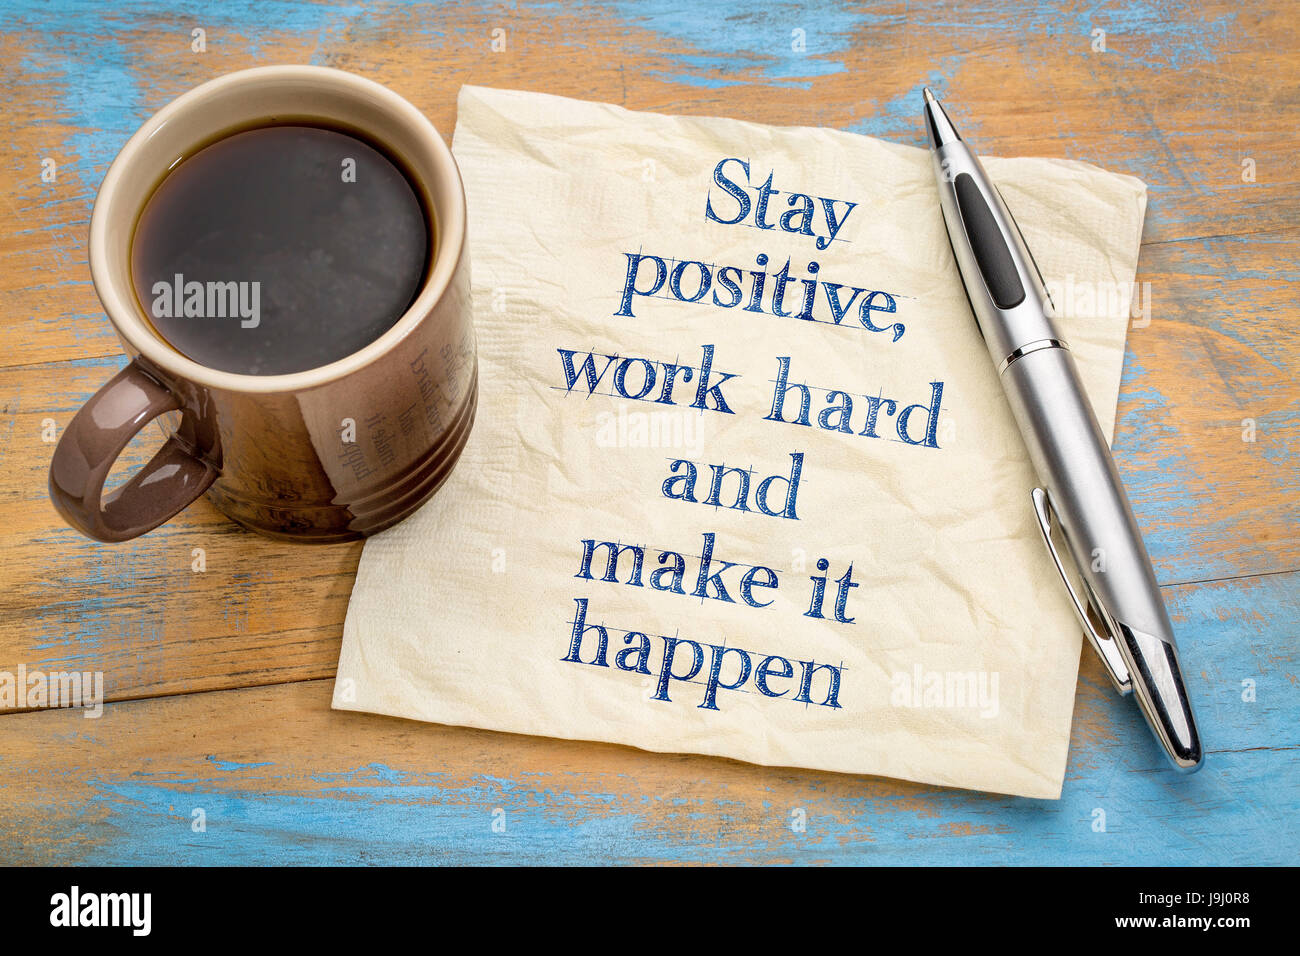 Mantener una actitud positiva, trabajar duro y hacer que suceda - escritura motivacional en una servilleta con una taza de café Foto de stock